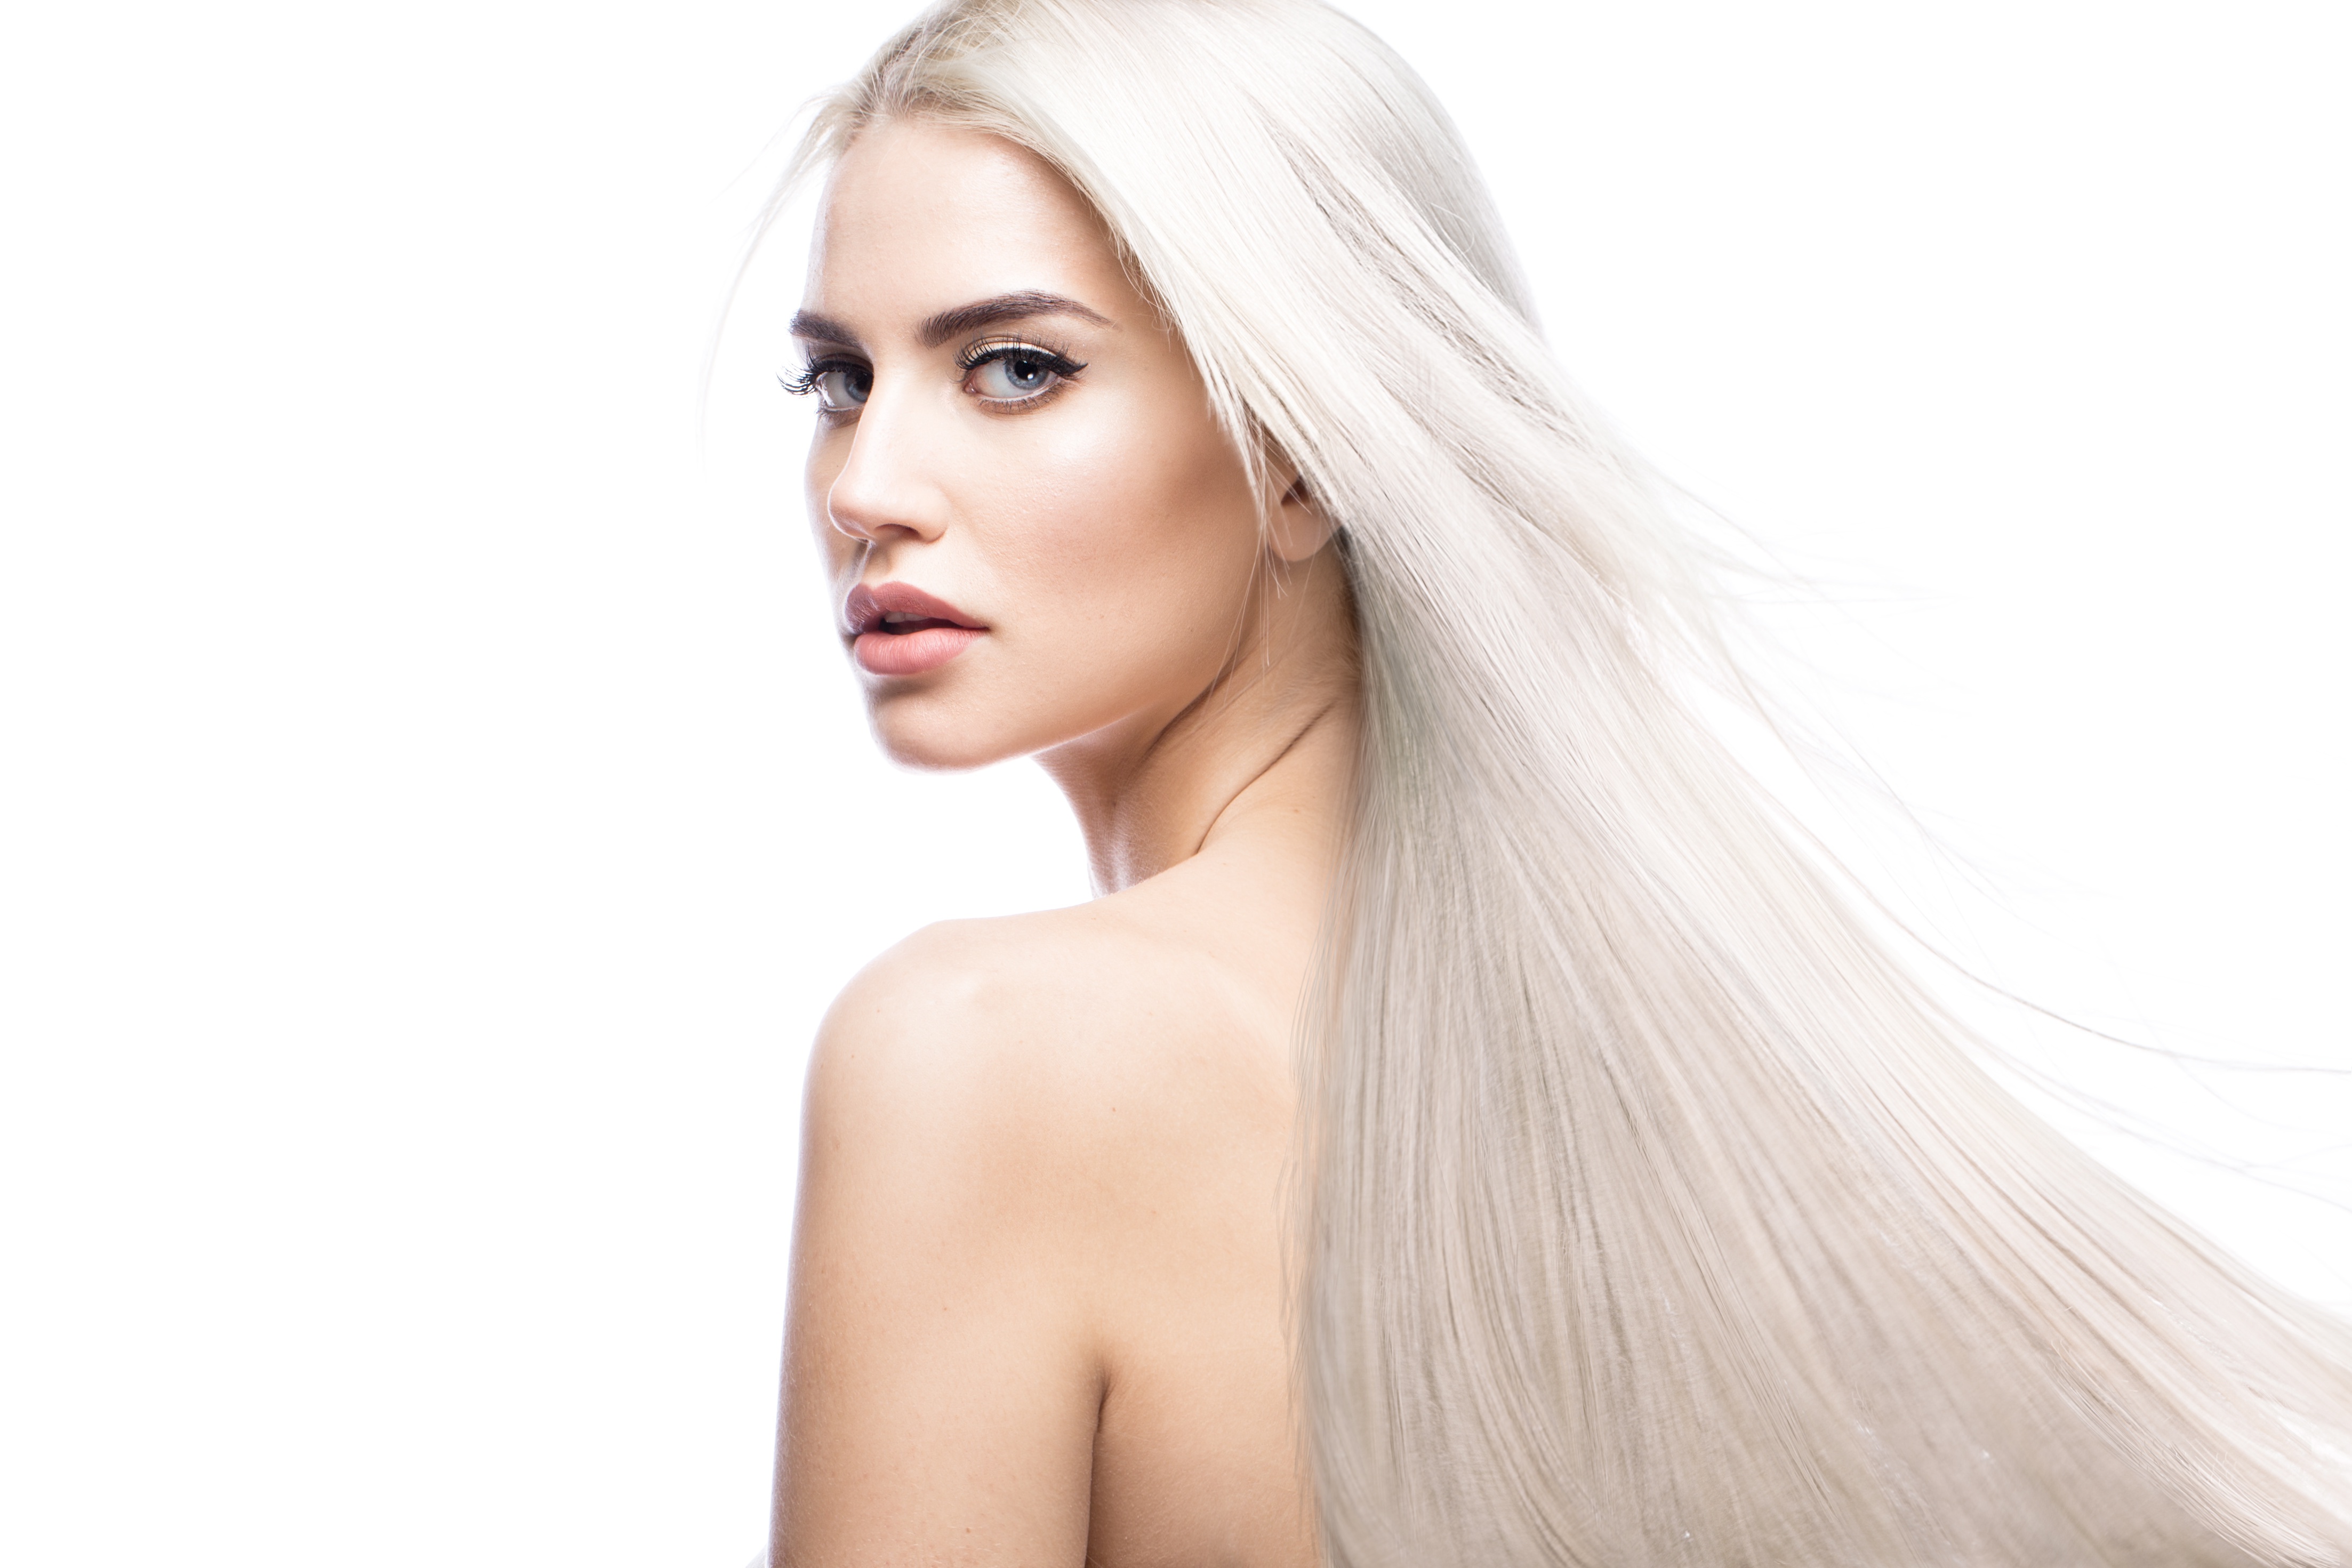 Wallpaper, women, platinum blonde, white hair, model, long hair, face, bare shoulders, white background 4411x2941